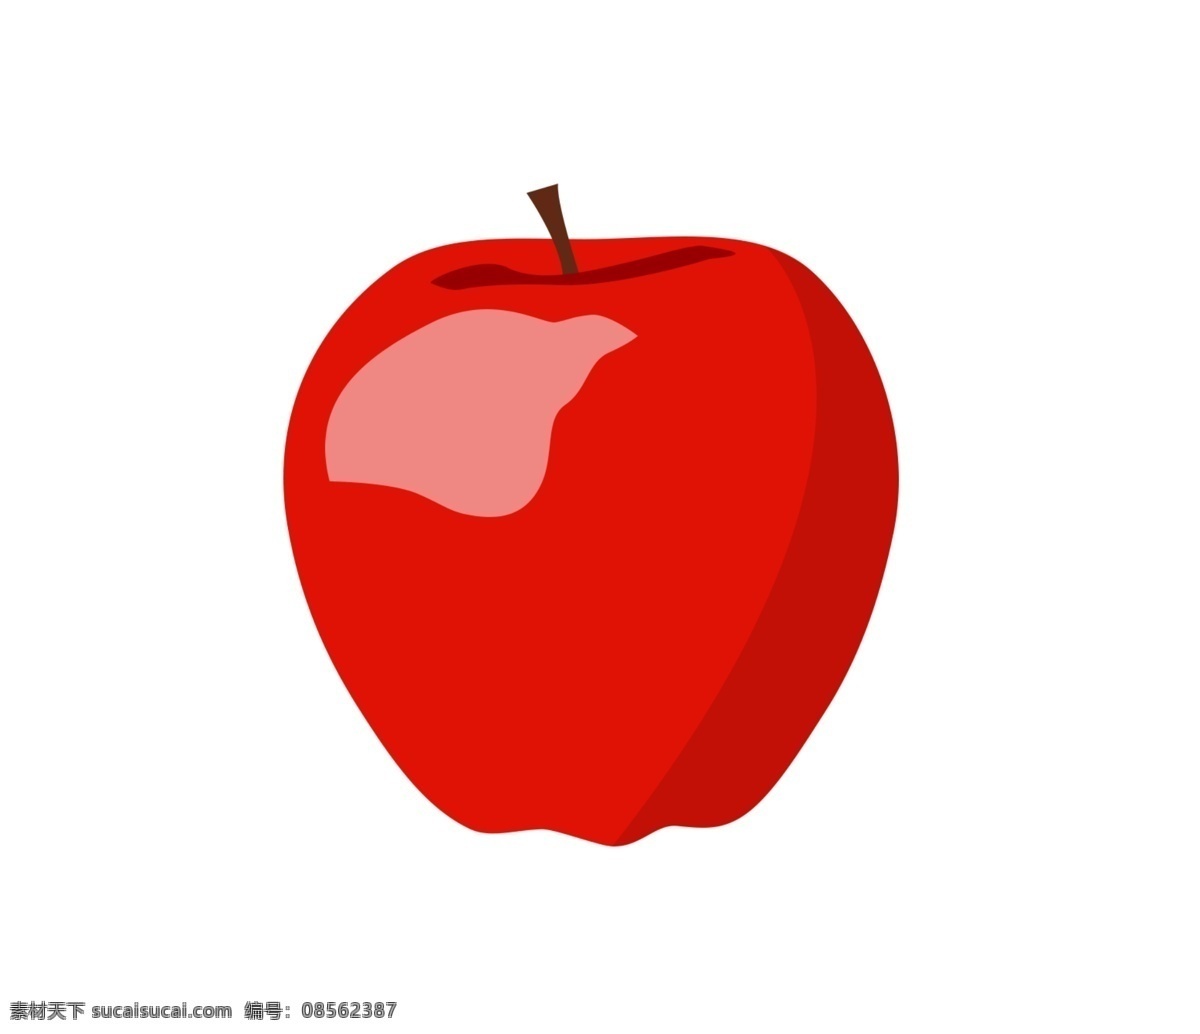 红色 手绘 卡通 苹果 装饰 卡通苹果 矢量卡通苹果 手绘苹果 矢量手绘苹果 苹果素材 卡通水果 手绘水果 矢量水果 矢量卡通水果 矢量手绘水果 卡通水果素材 设 生物世界 水果